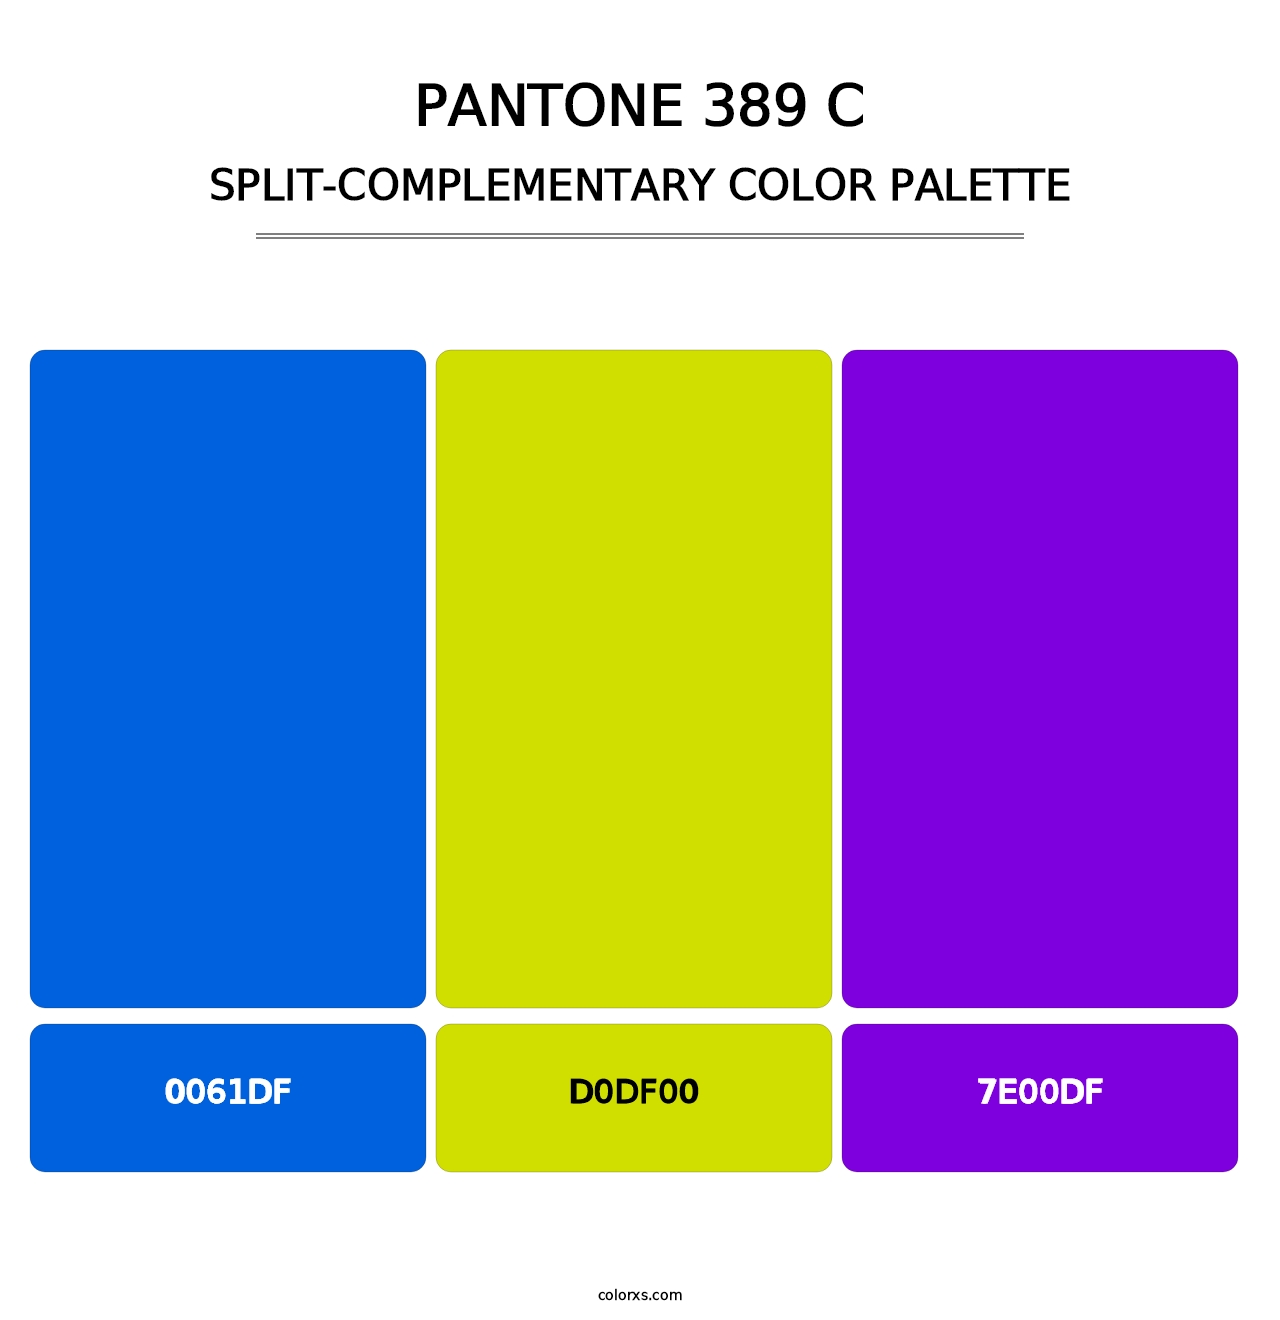 PANTONE 389 C - Split-Complementary Color Palette